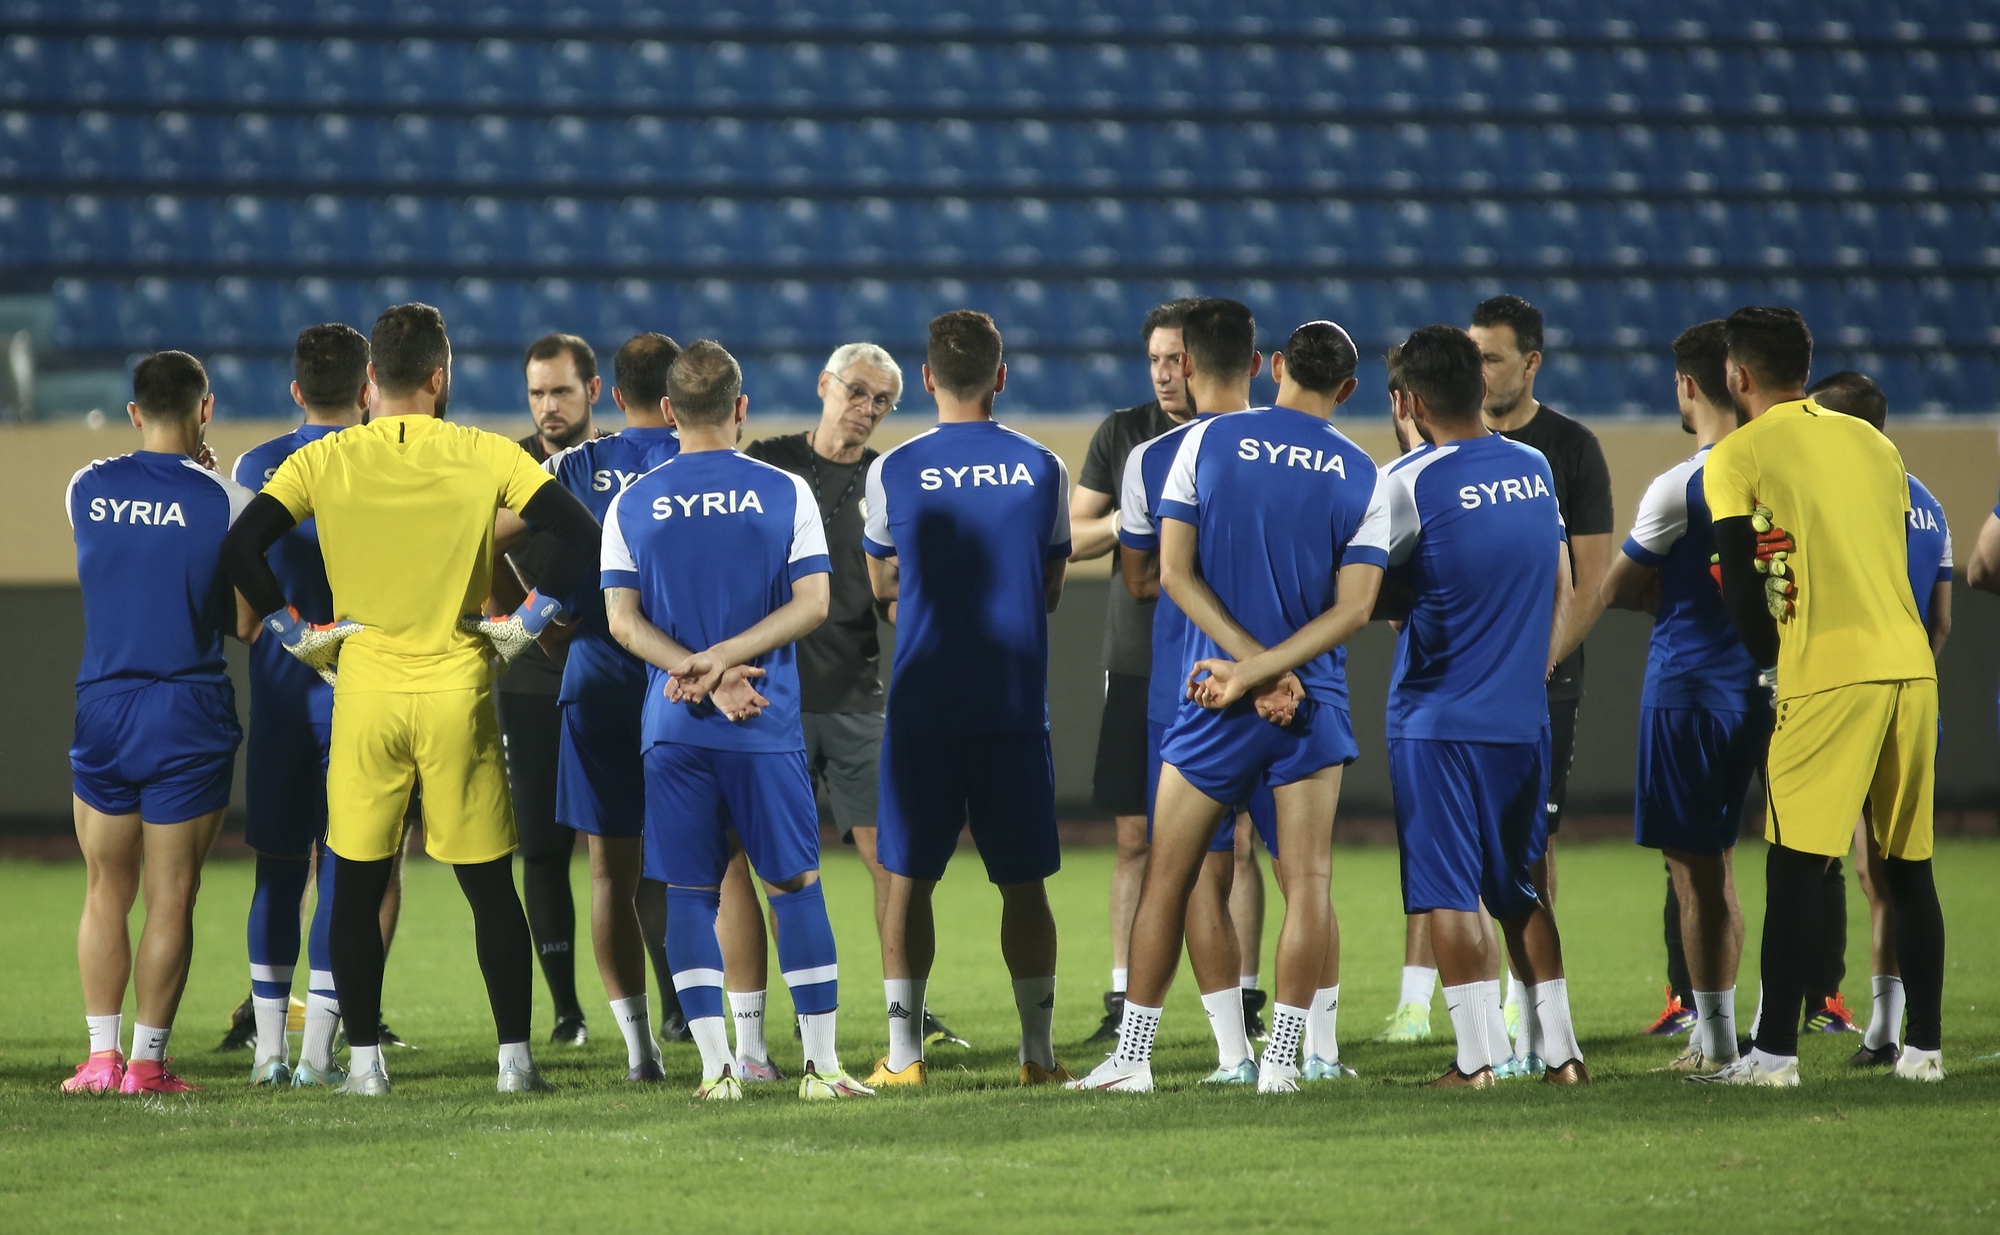 HLV Hector Cuper kiểm tra mặt sân, đội Syria tập bài cực 'dị' trước ngày đấu Việt Nam - Ảnh 4.